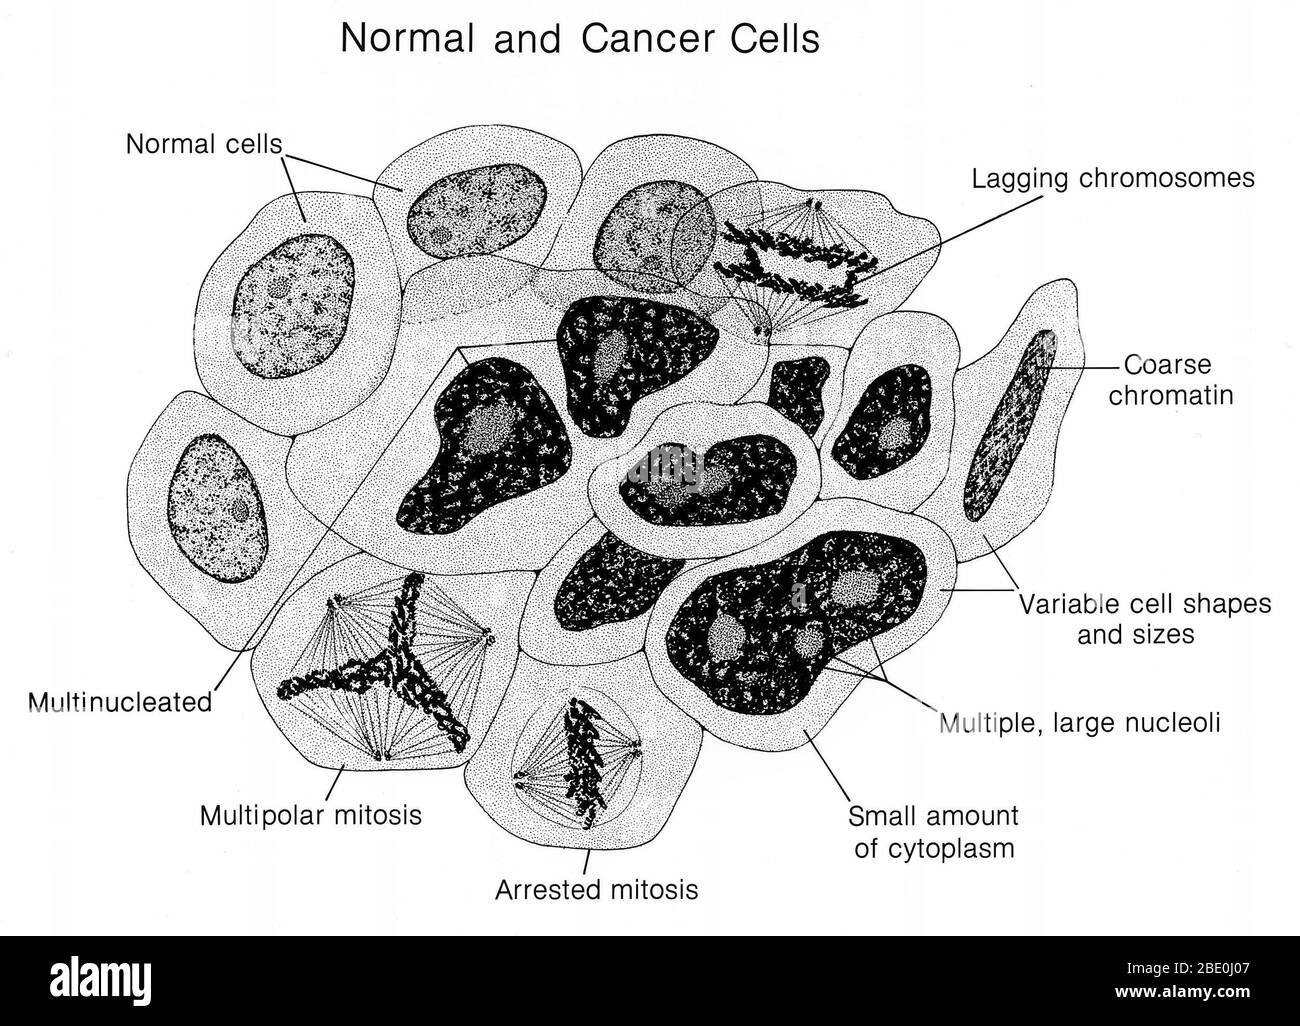 Illustration von normalen und Krebszellen nebeneinander. Die normalen und krebsartigen Eigenschaften werden identifiziert. Krebs auch als bösartiger Tumor oder bösartigen Neoplasma bekannt, ist eine Gruppe von Krankheiten, die abnormes Zellwachstum mit dem Potenzial, eindringen oder zu anderen Teilen des Körpers zu verbreiten. Nicht alle Tumore sind krebsartig; gutartige Tumoren verbreiten sich nicht auf andere Teile des Körpers. Mögliche Anzeichen und Symptome sind: Ein neuer Klumpen, abnorme Blutungen, ein längerer Husten, unerklärlicher Gewichtsverlust und eine Änderung des Stuhlgangs unter anderem. Während diese Symptome auf Krebs hinweisen können, können sie auch auftreten Stockfoto